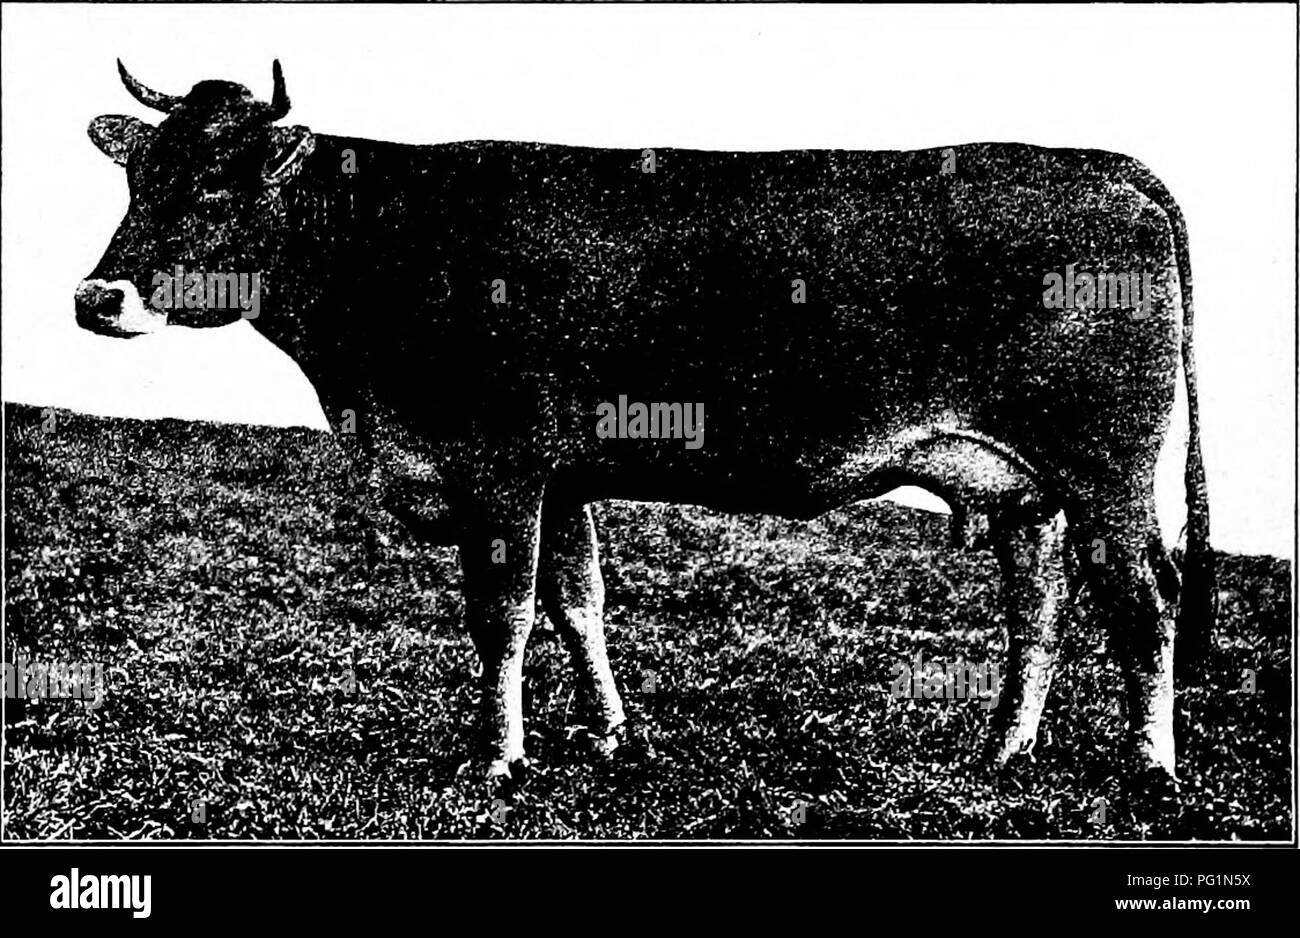 . Types et races d'animaux de ferme . Le bétail. La BROWN SWISS 329 M. Kiihn de Degersheim, où 40 vaches supérieure était en moyenne de 17 à 20 litres de lait par jour. Dans l'essai de produits laitiers panaméricaine en 1901 les cinq vaches suisse était troisième au total solides du lait produit, huitième dans le résultat net de matières grasses, et quatrième en livres de lait produit, d'être dépassé dans la production de lait par l'Ayrshire et Holstein, Shorthorn, respectivement. Dans le résultat net au cours des six mois de tester le rang le plus élevé atteint par un suisse parmi cinquante têtes de dix races était dix-neuvième, la vache Bell T. montrant un bénéfice net de 41 $. Banque D'Images